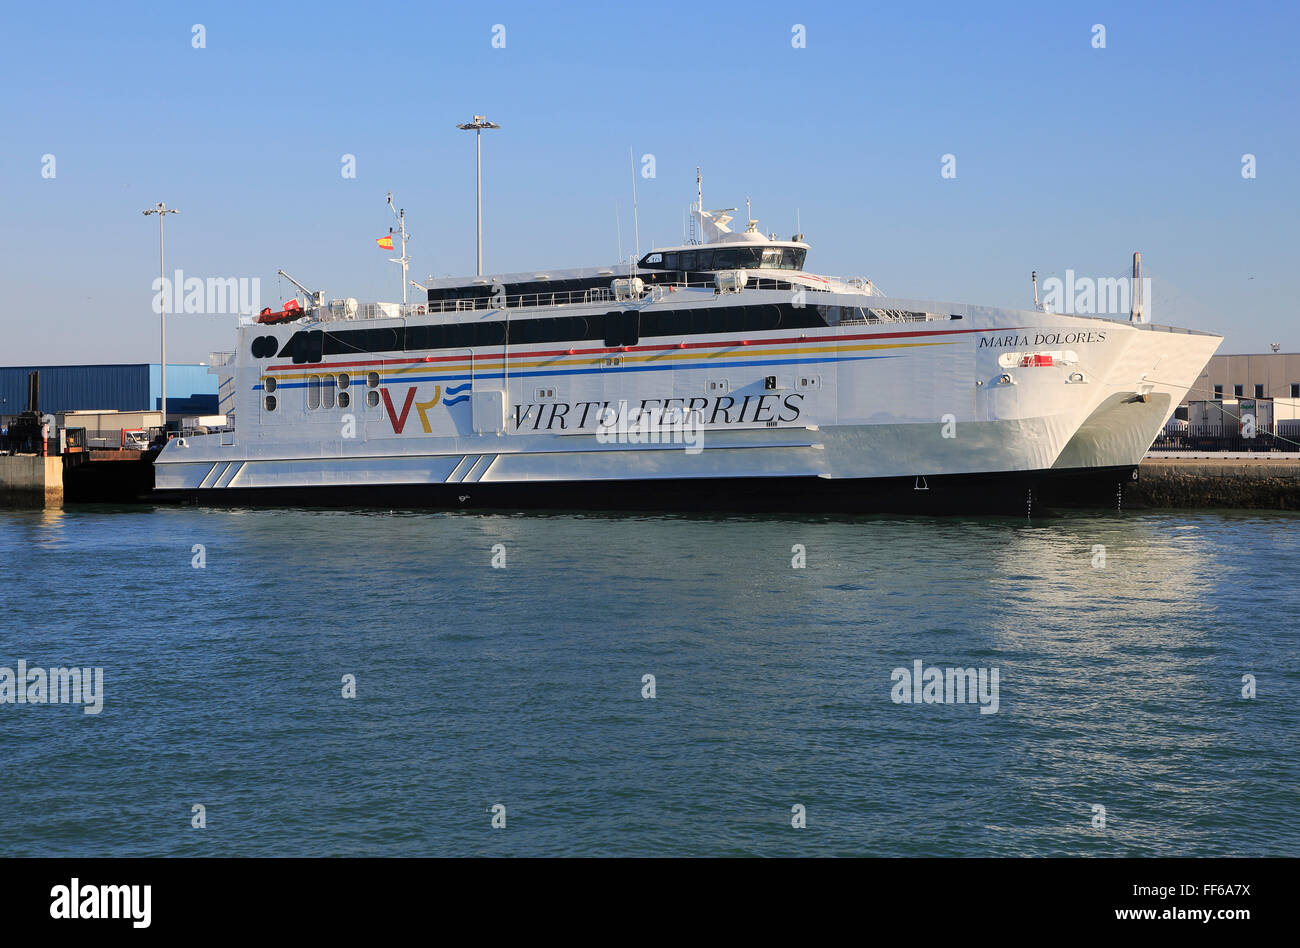 Maria Dolores, Virtu Ferries ship in the harbour port of Cadiz, Spain ...